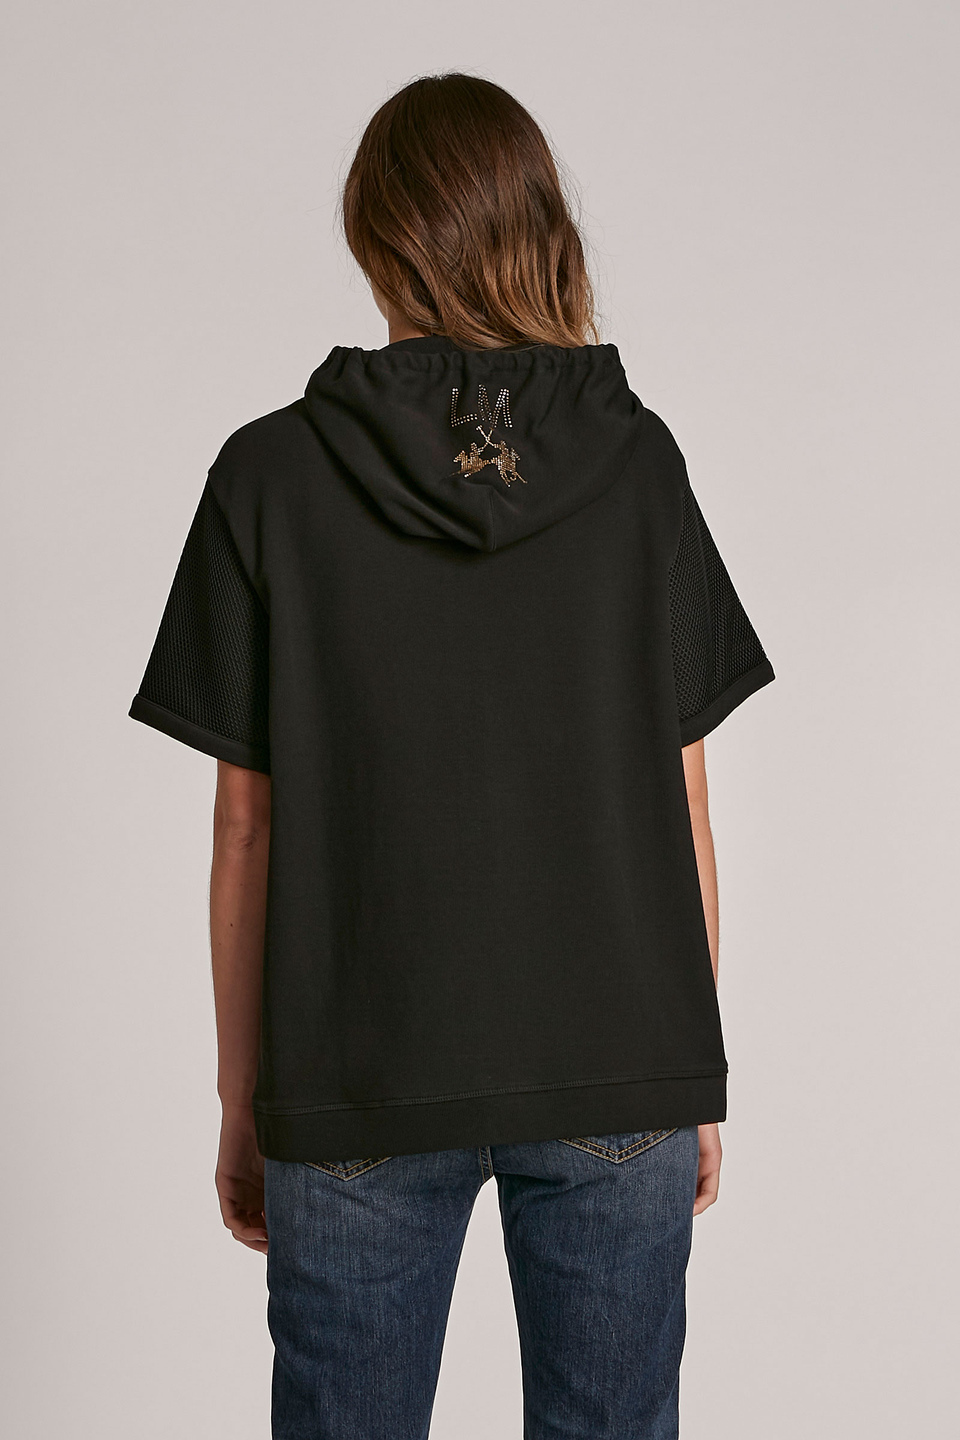 Women's regular-fit zip-up cotton sweatshirt | La Martina - Official Online Shop